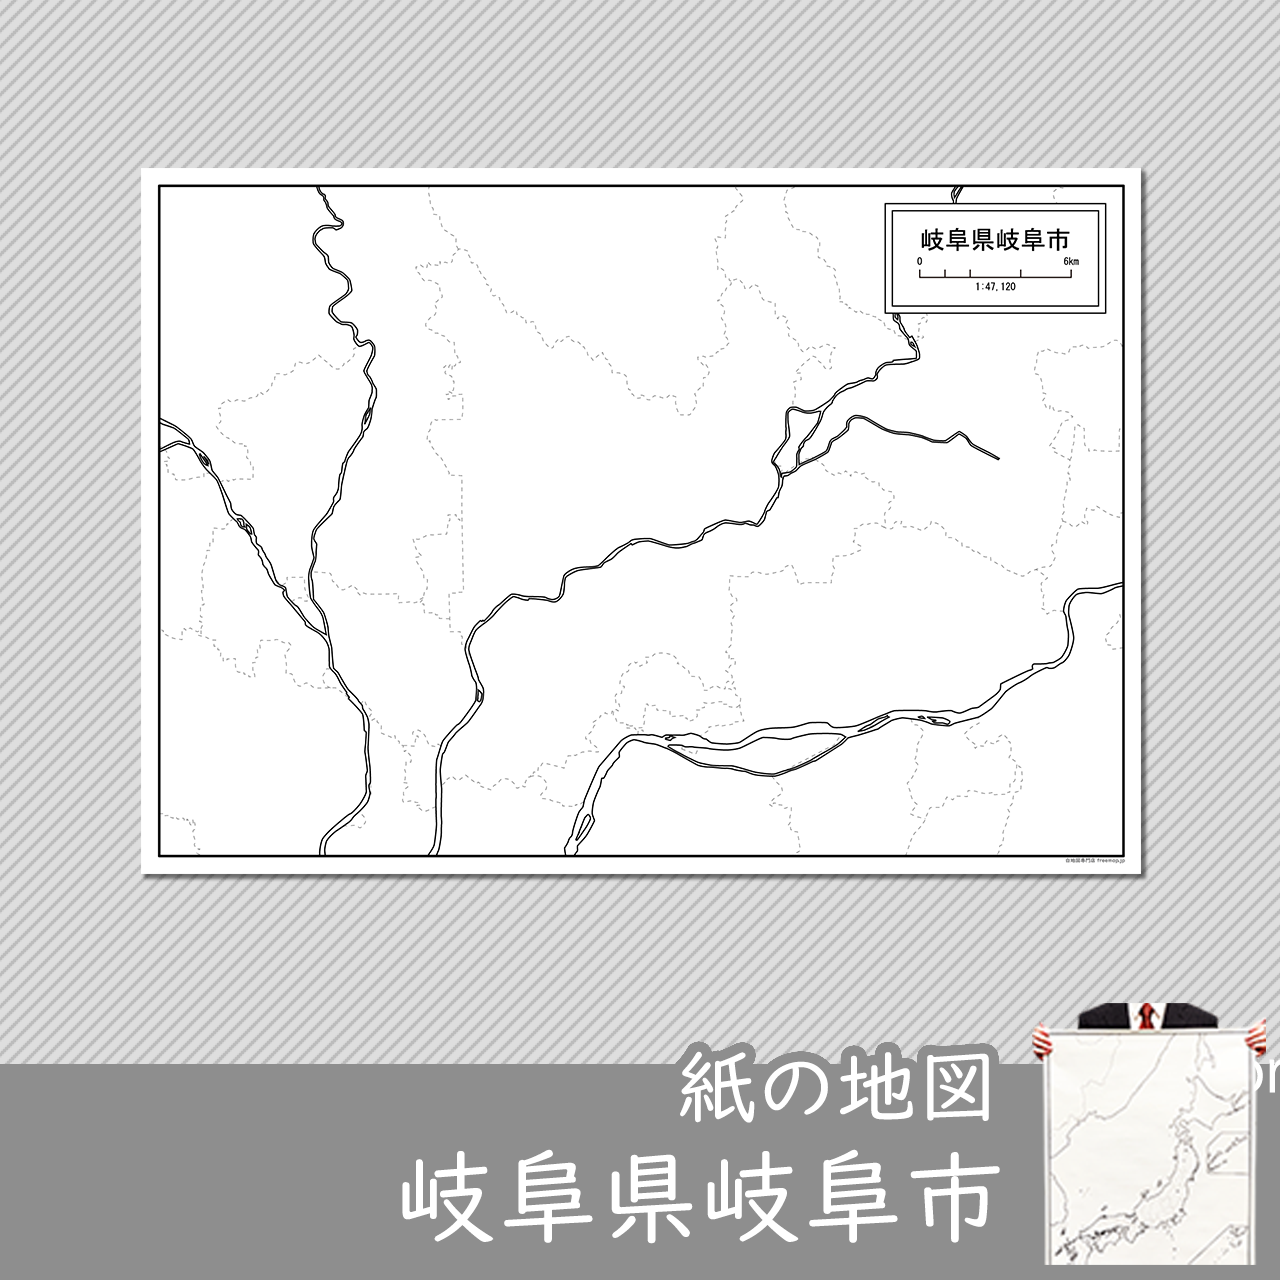 岐阜市の紙の白地図のサムネイル